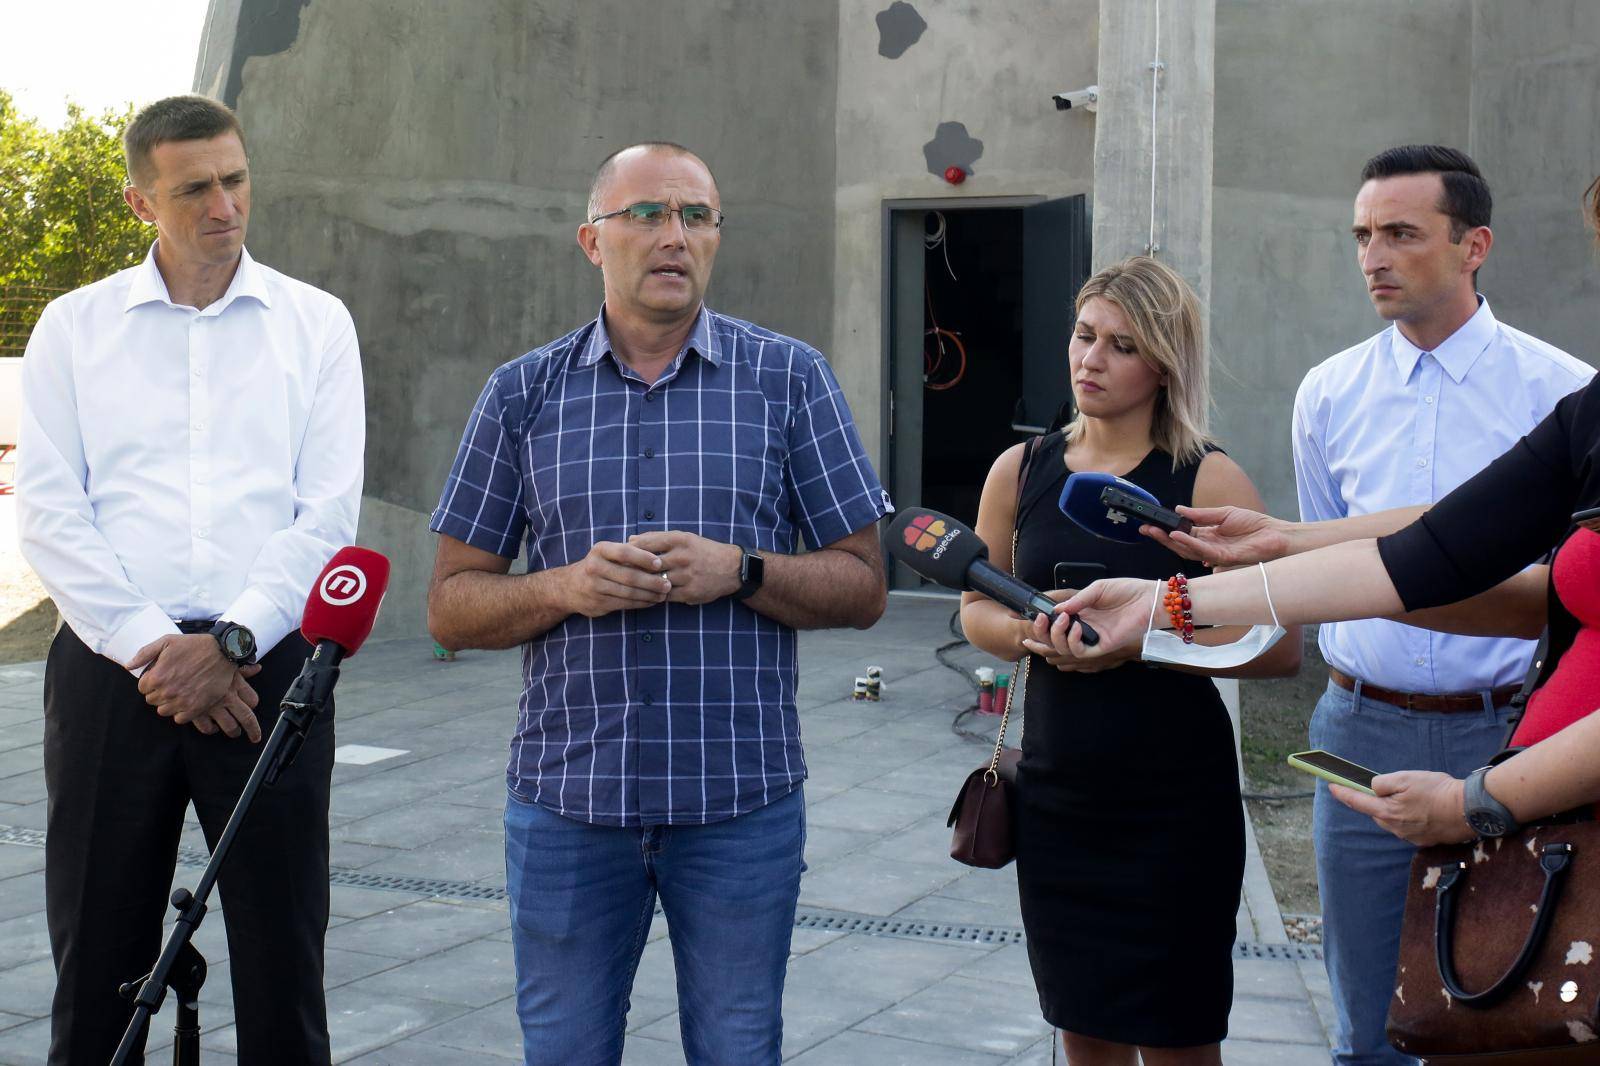 Gradonačelnik Vukovara obišao Vodotoranj koji je u završnoj fazi izgradnje